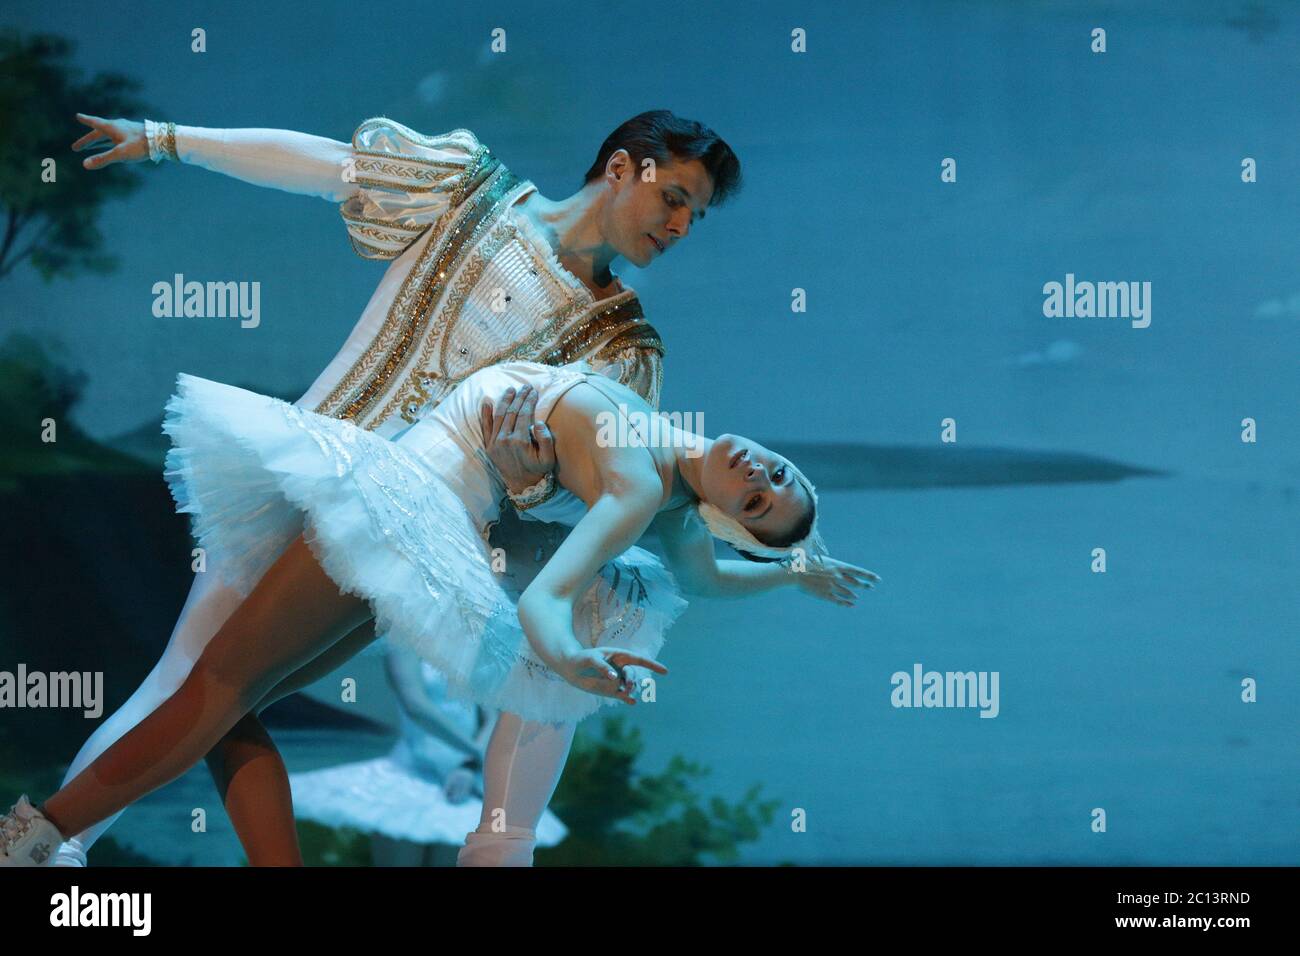 Schwanensee Ballett auf Eis Stockfotografie - Alamy